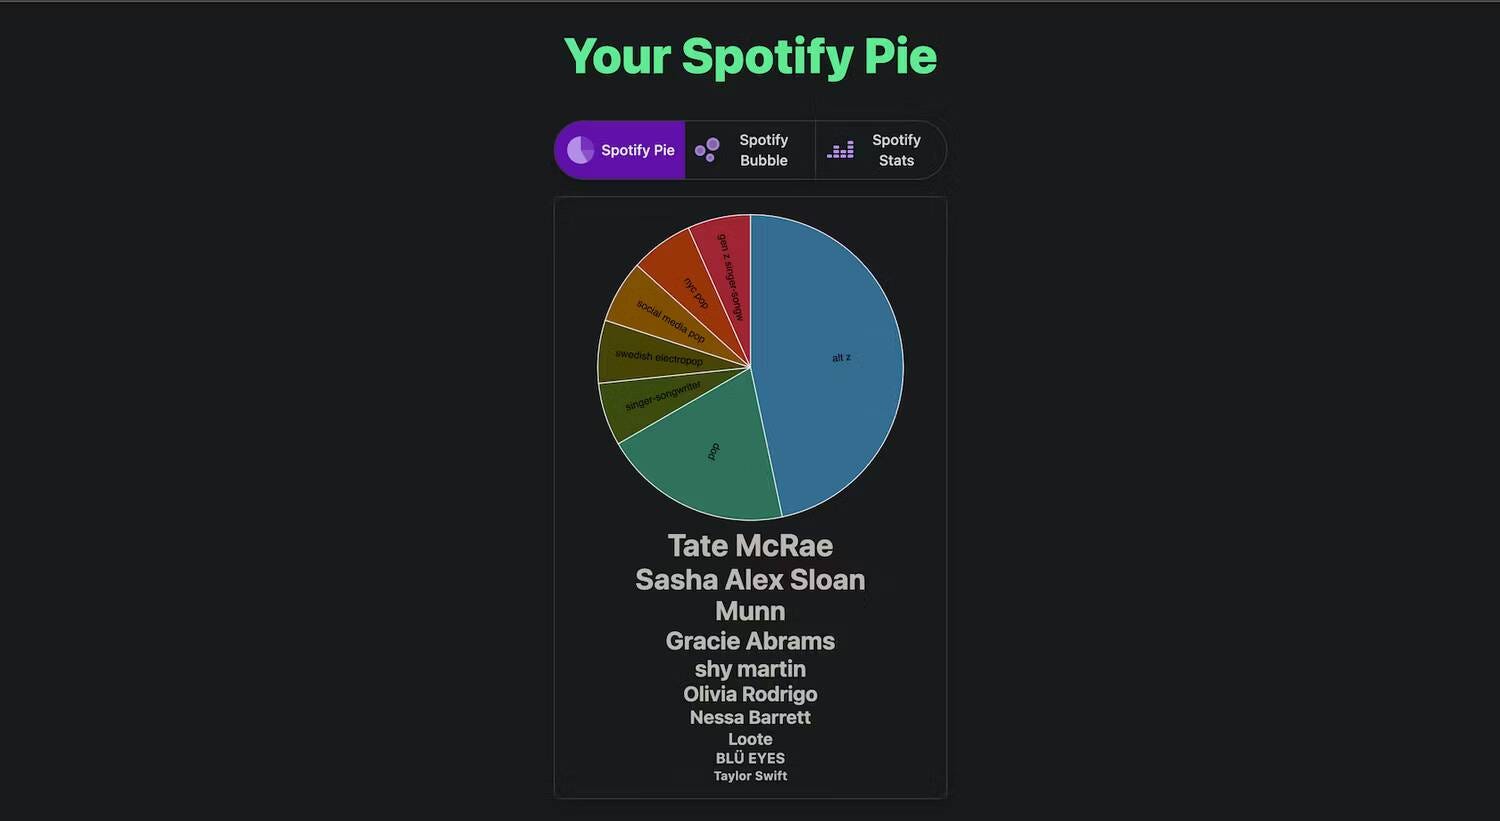 كيفية إنشاء مُخطط دائري لـ Spotify بناءً على إحصائياتك لتحديد أنماط الاستماع لديك - شروحات